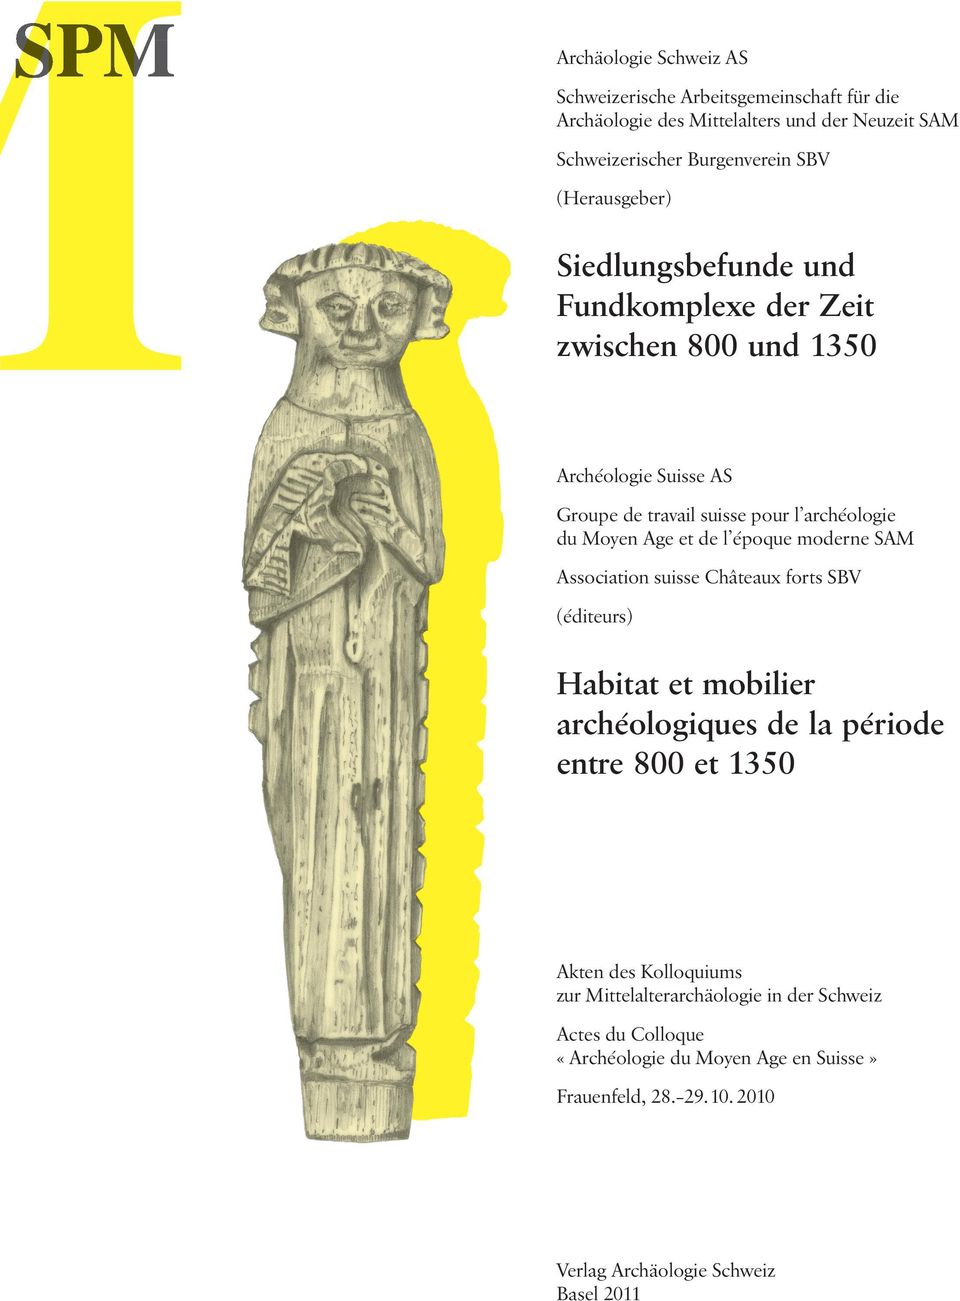 et de l époque moderne SAM Association suisse Châteaux forts SBV (éditeurs) Habitat et mobilier archéologiques de la période entre 800 et 1350 Akten des